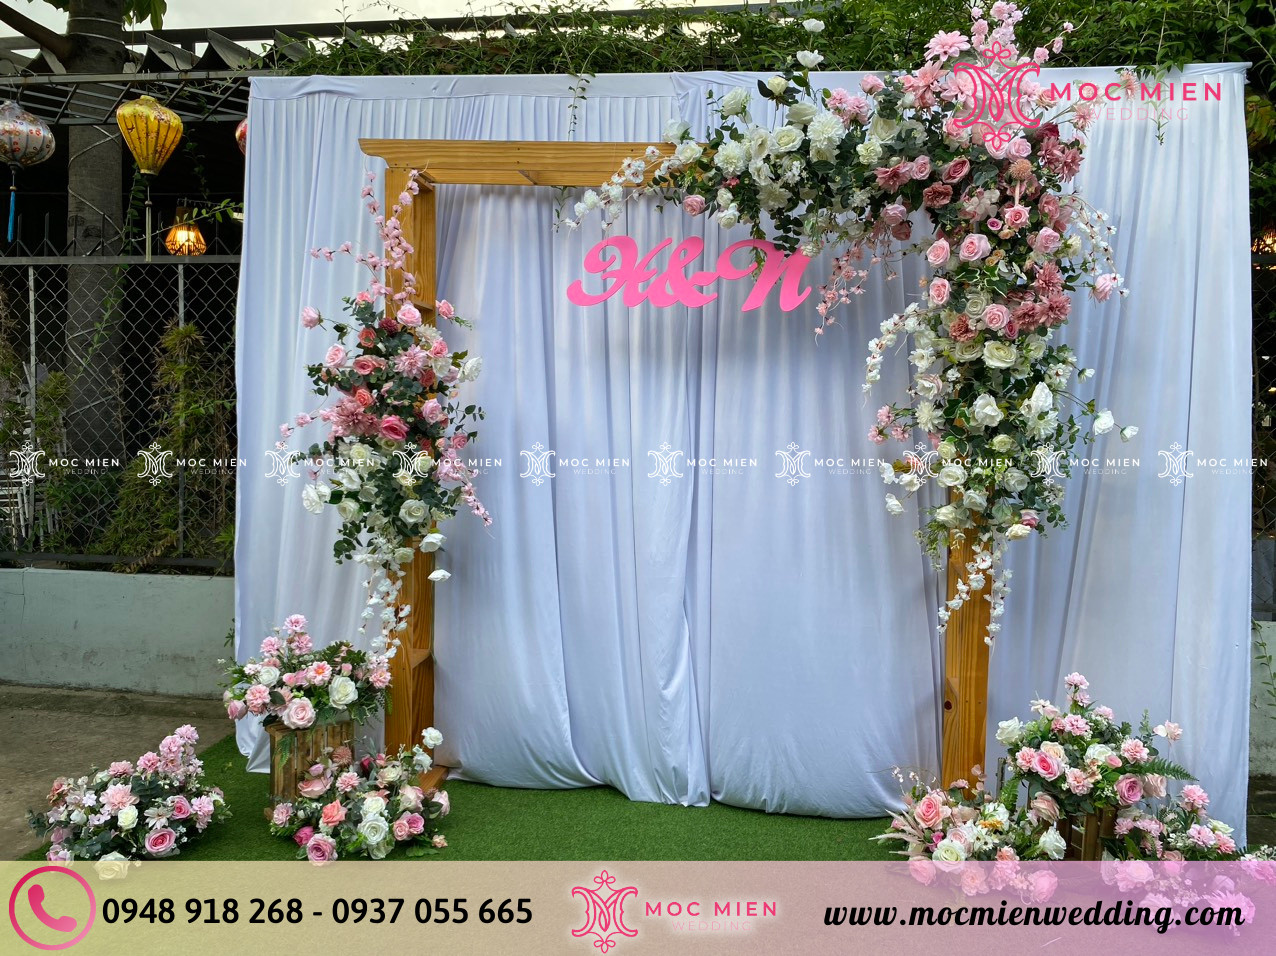 Cho thuê phông chụp ảnh cưới bằng hoa lụa đơn giản tại TPHCM